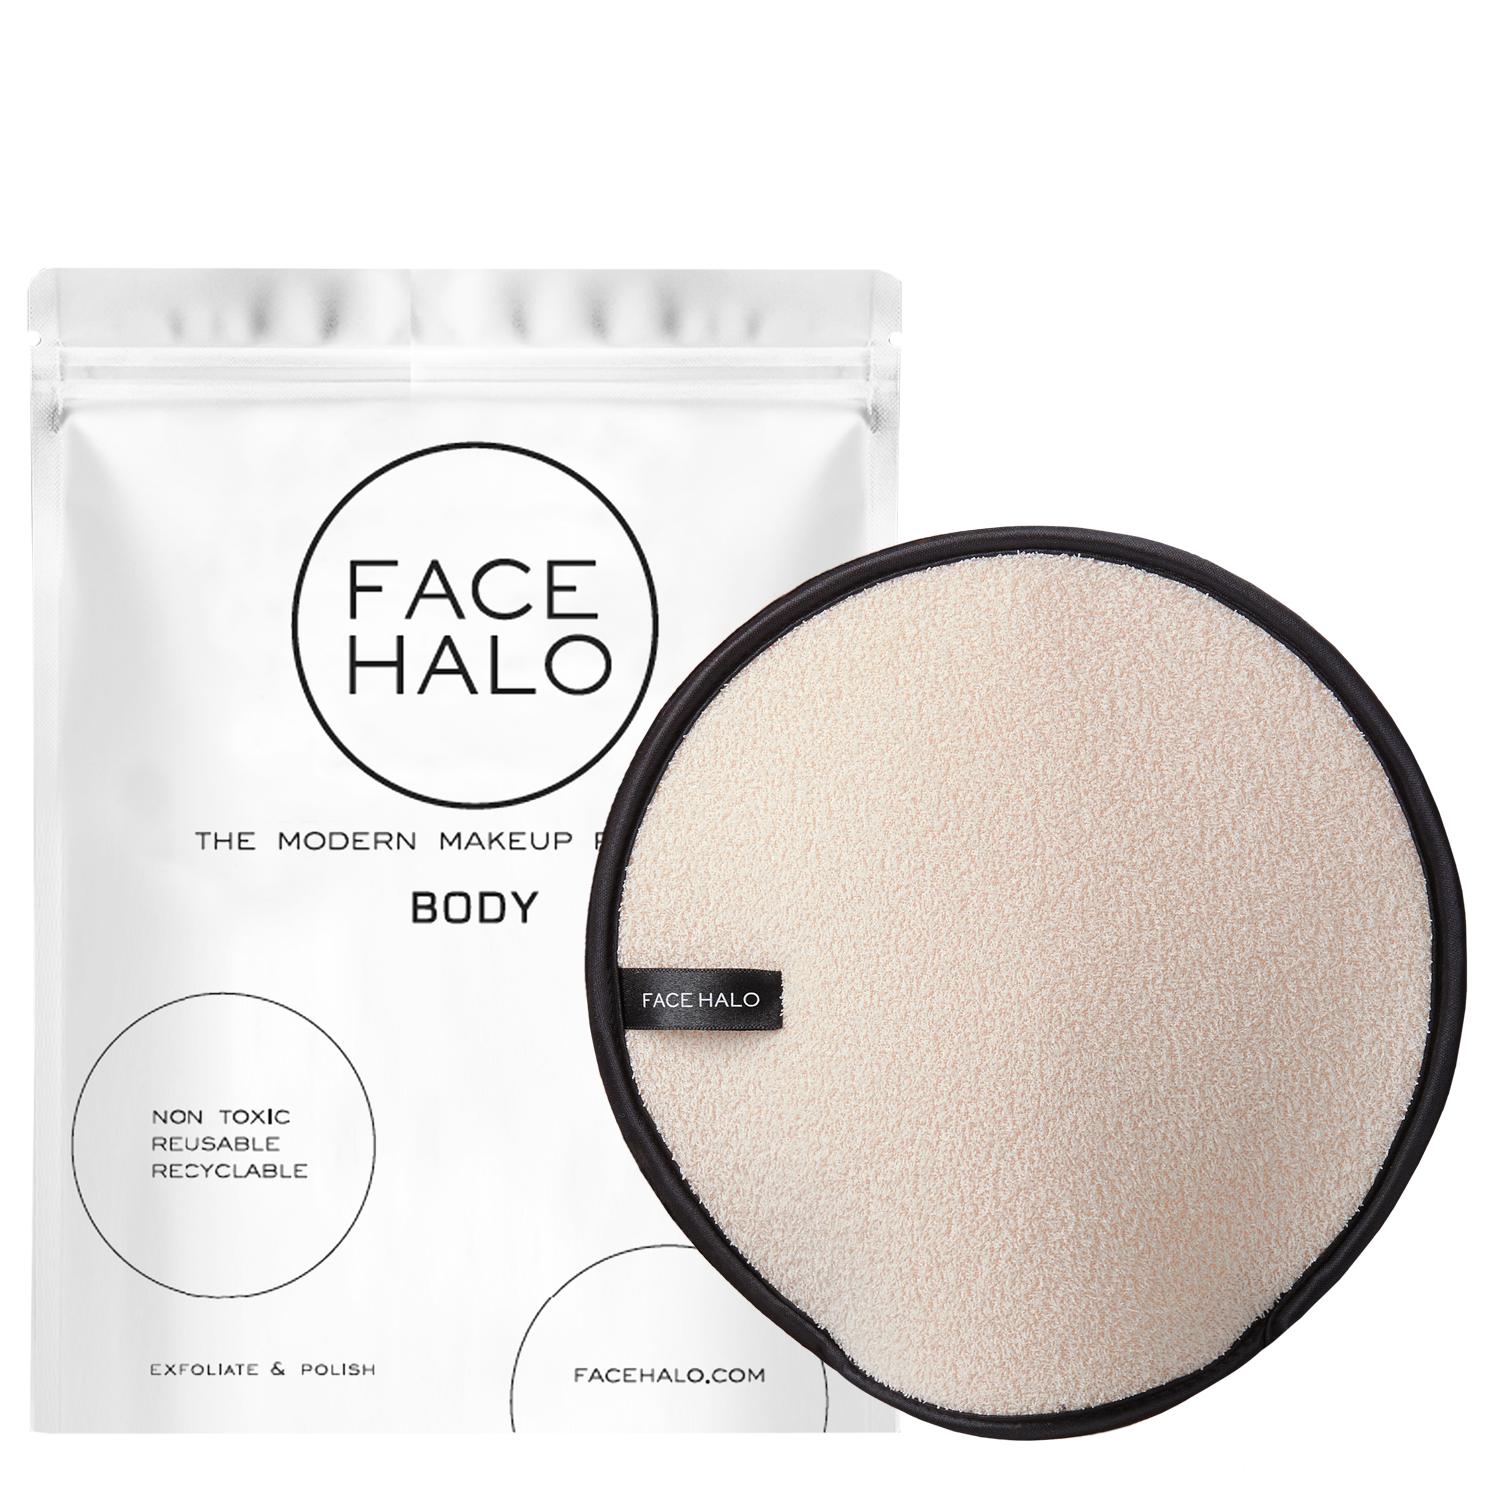 Face Halo Body